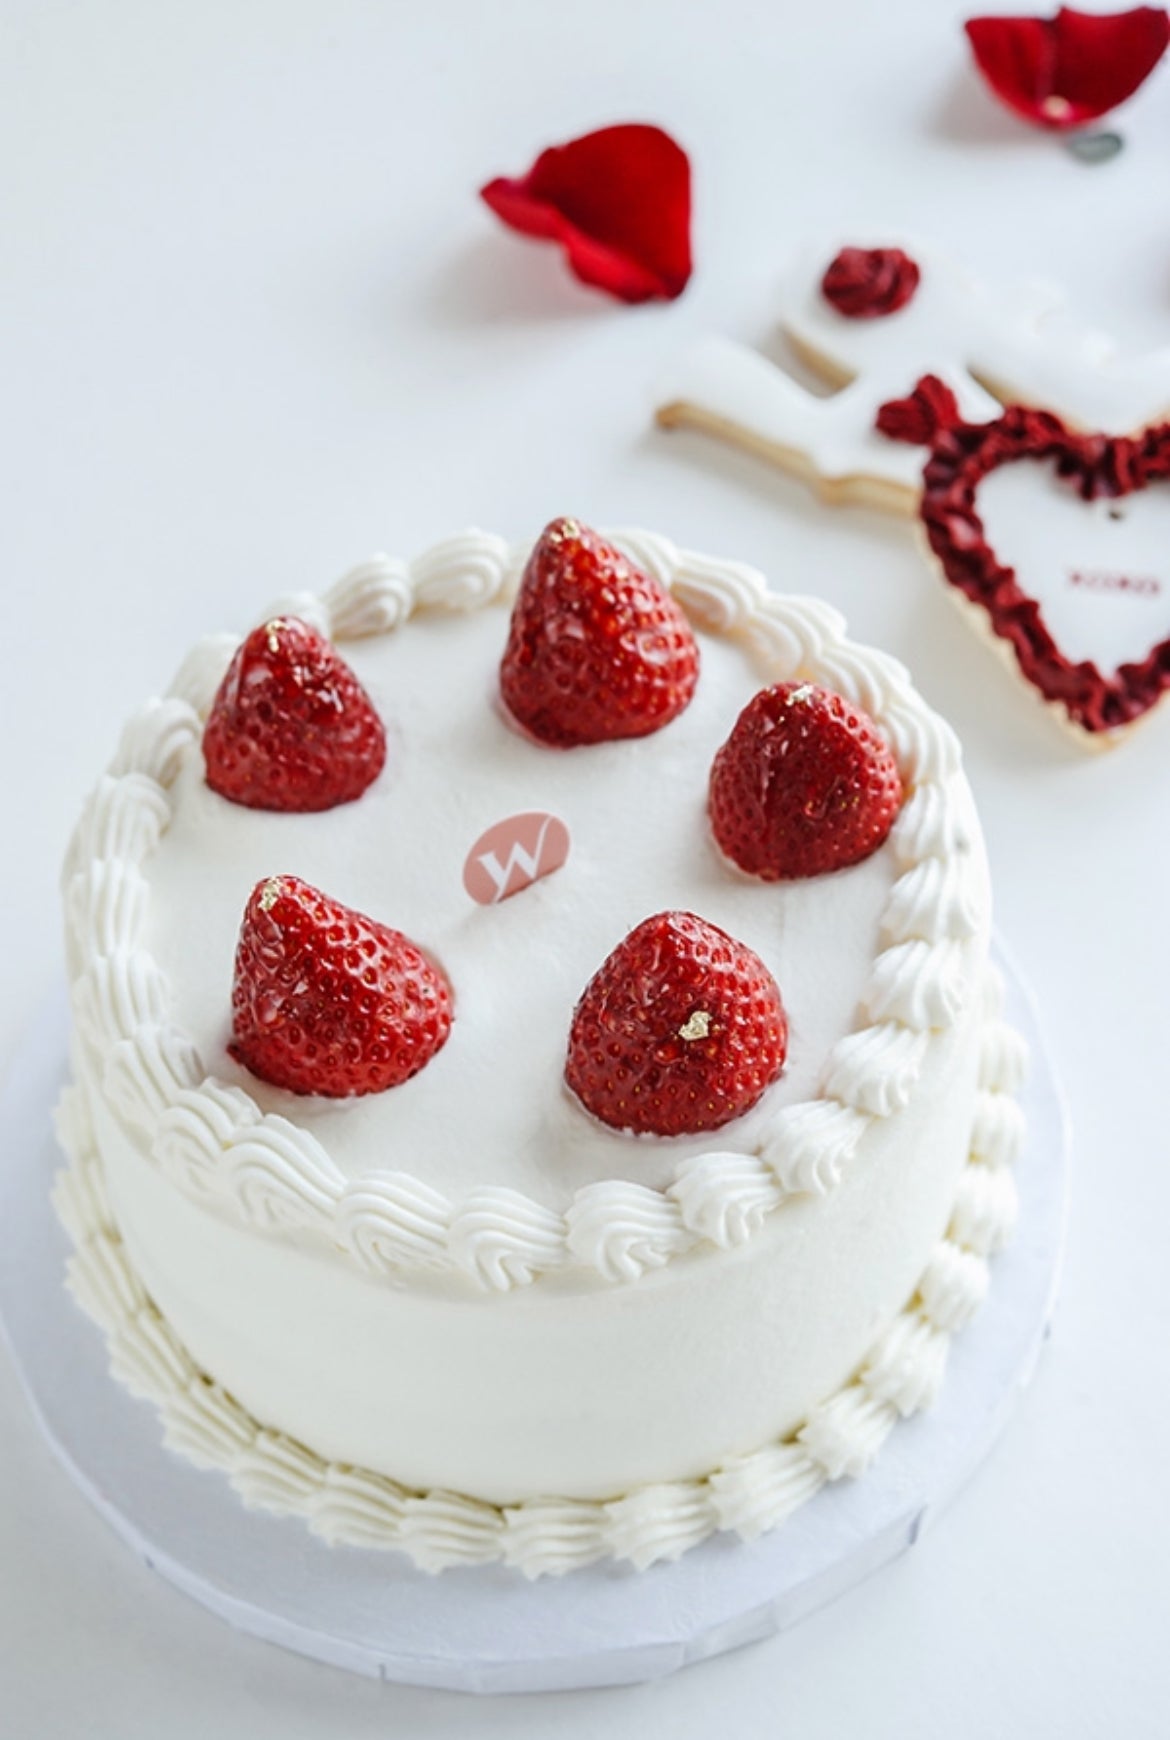 6-inch Strawberry Shortcake